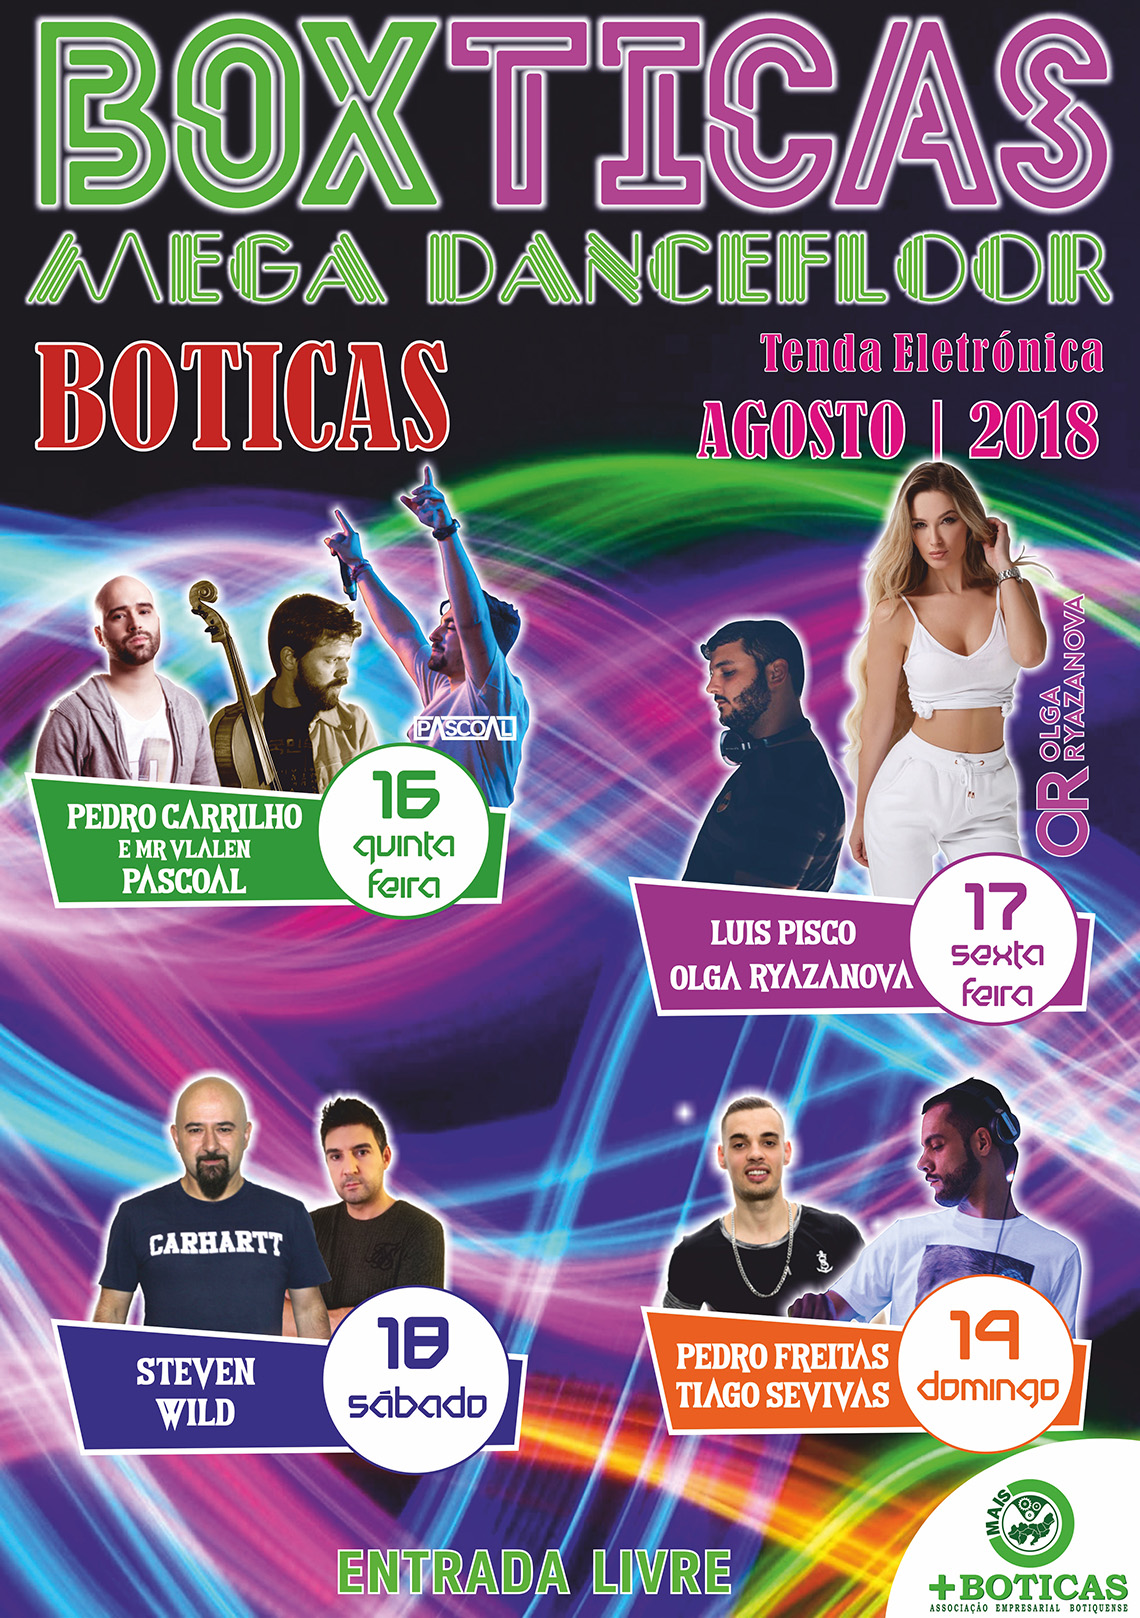 Boxticas Mega DanceFloor 2018